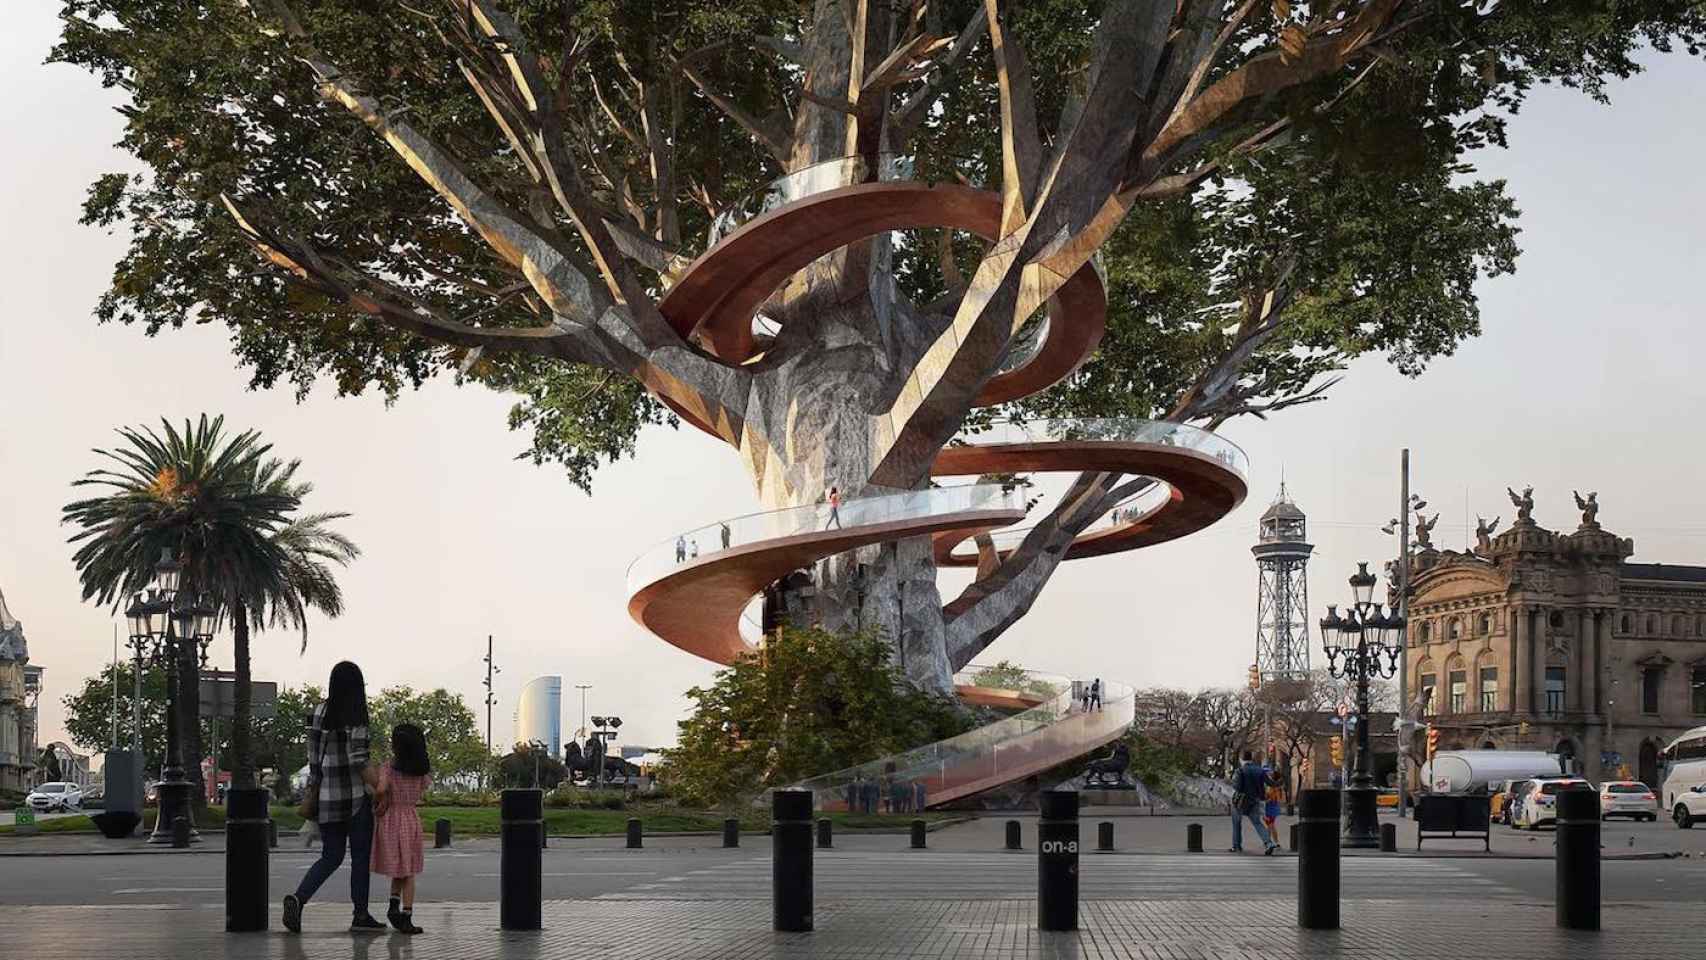 El árbol colonizador, la propuesta de unos arquitectos para tapar a Colón, / MODEL-FESTIVAL D'ARQUITECTURES